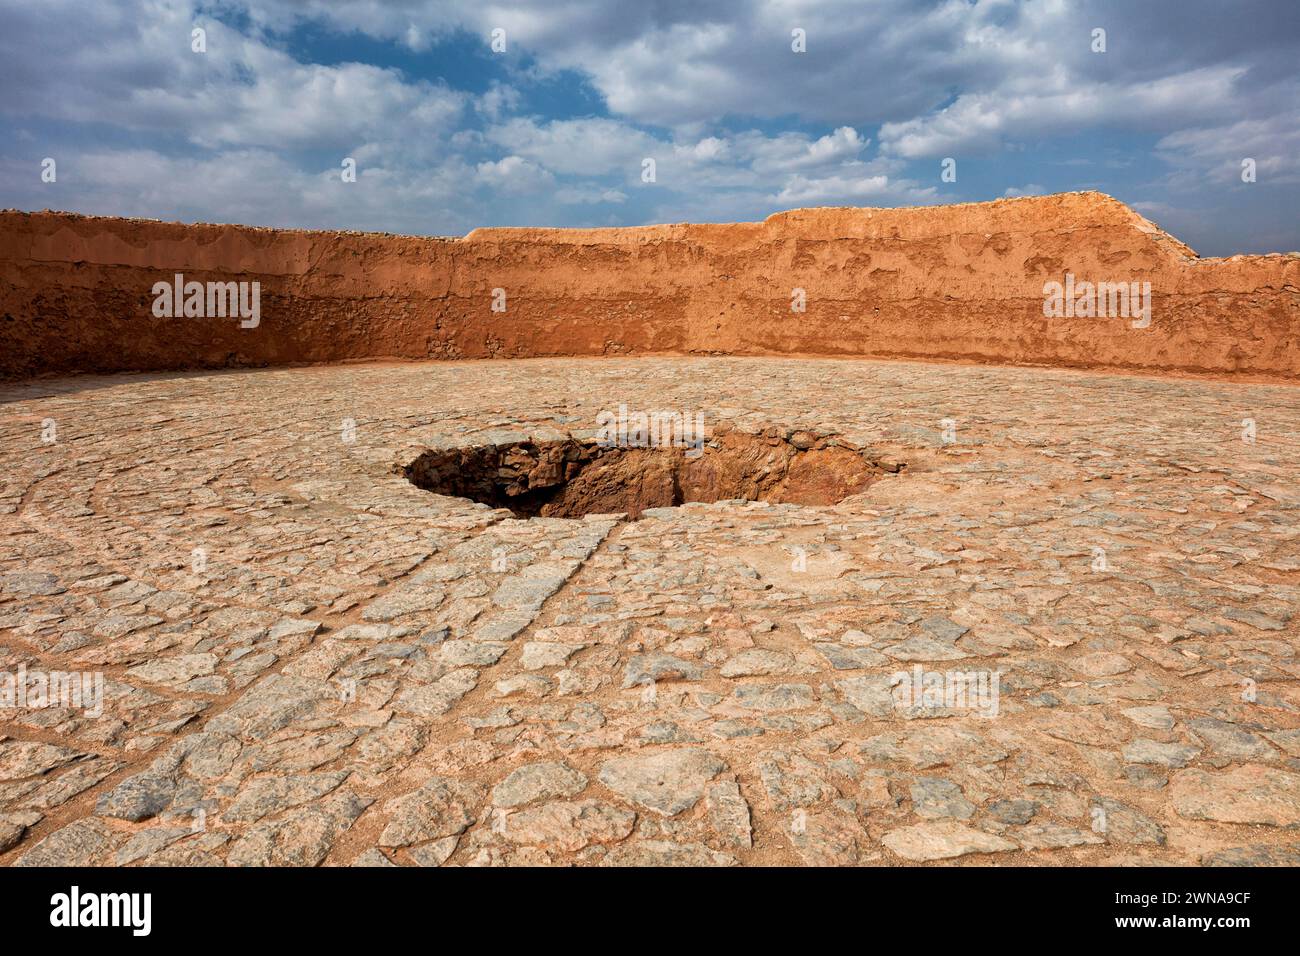 Le puits du milieu (Ostudan) sur la plate-forme supérieure de la Tour du silence, utilisé comme lieu pour les os des défunts dans la tradition funéraire zoroastrienne. Yazd, Iran. Banque D'Images